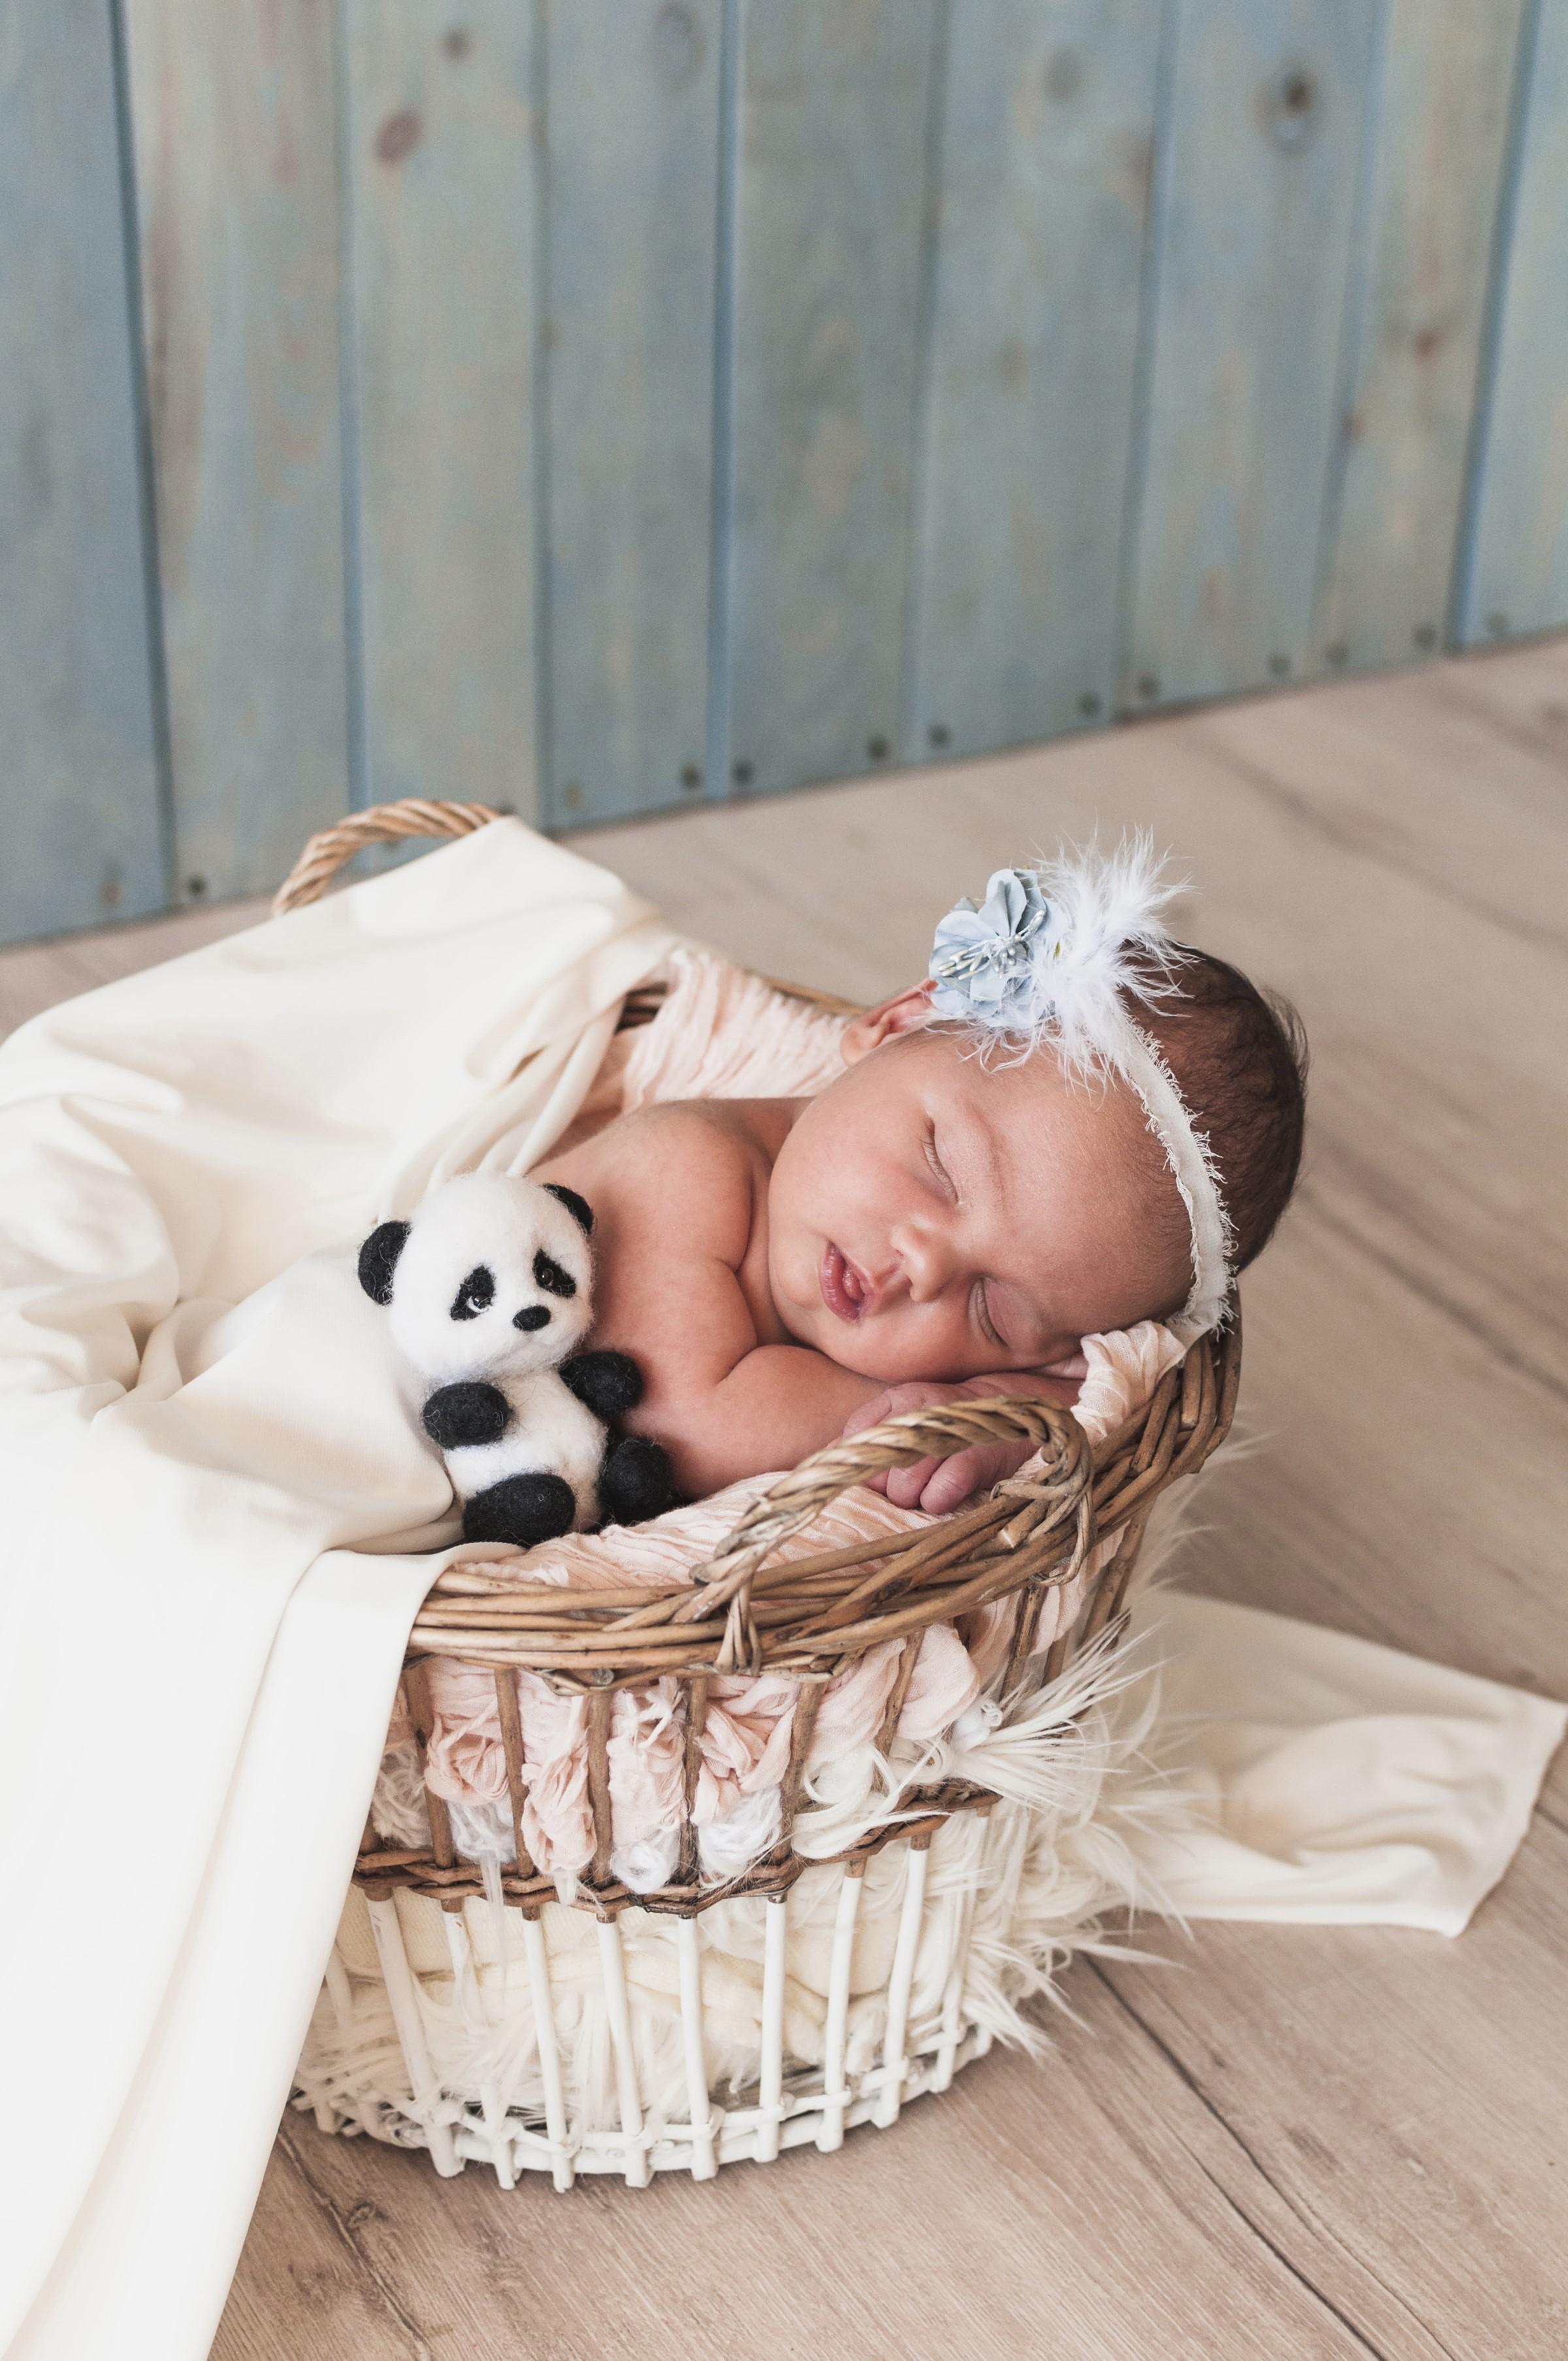 HD wallpaper, Infants, Wicker Basket, Teddy Bear, Sleep